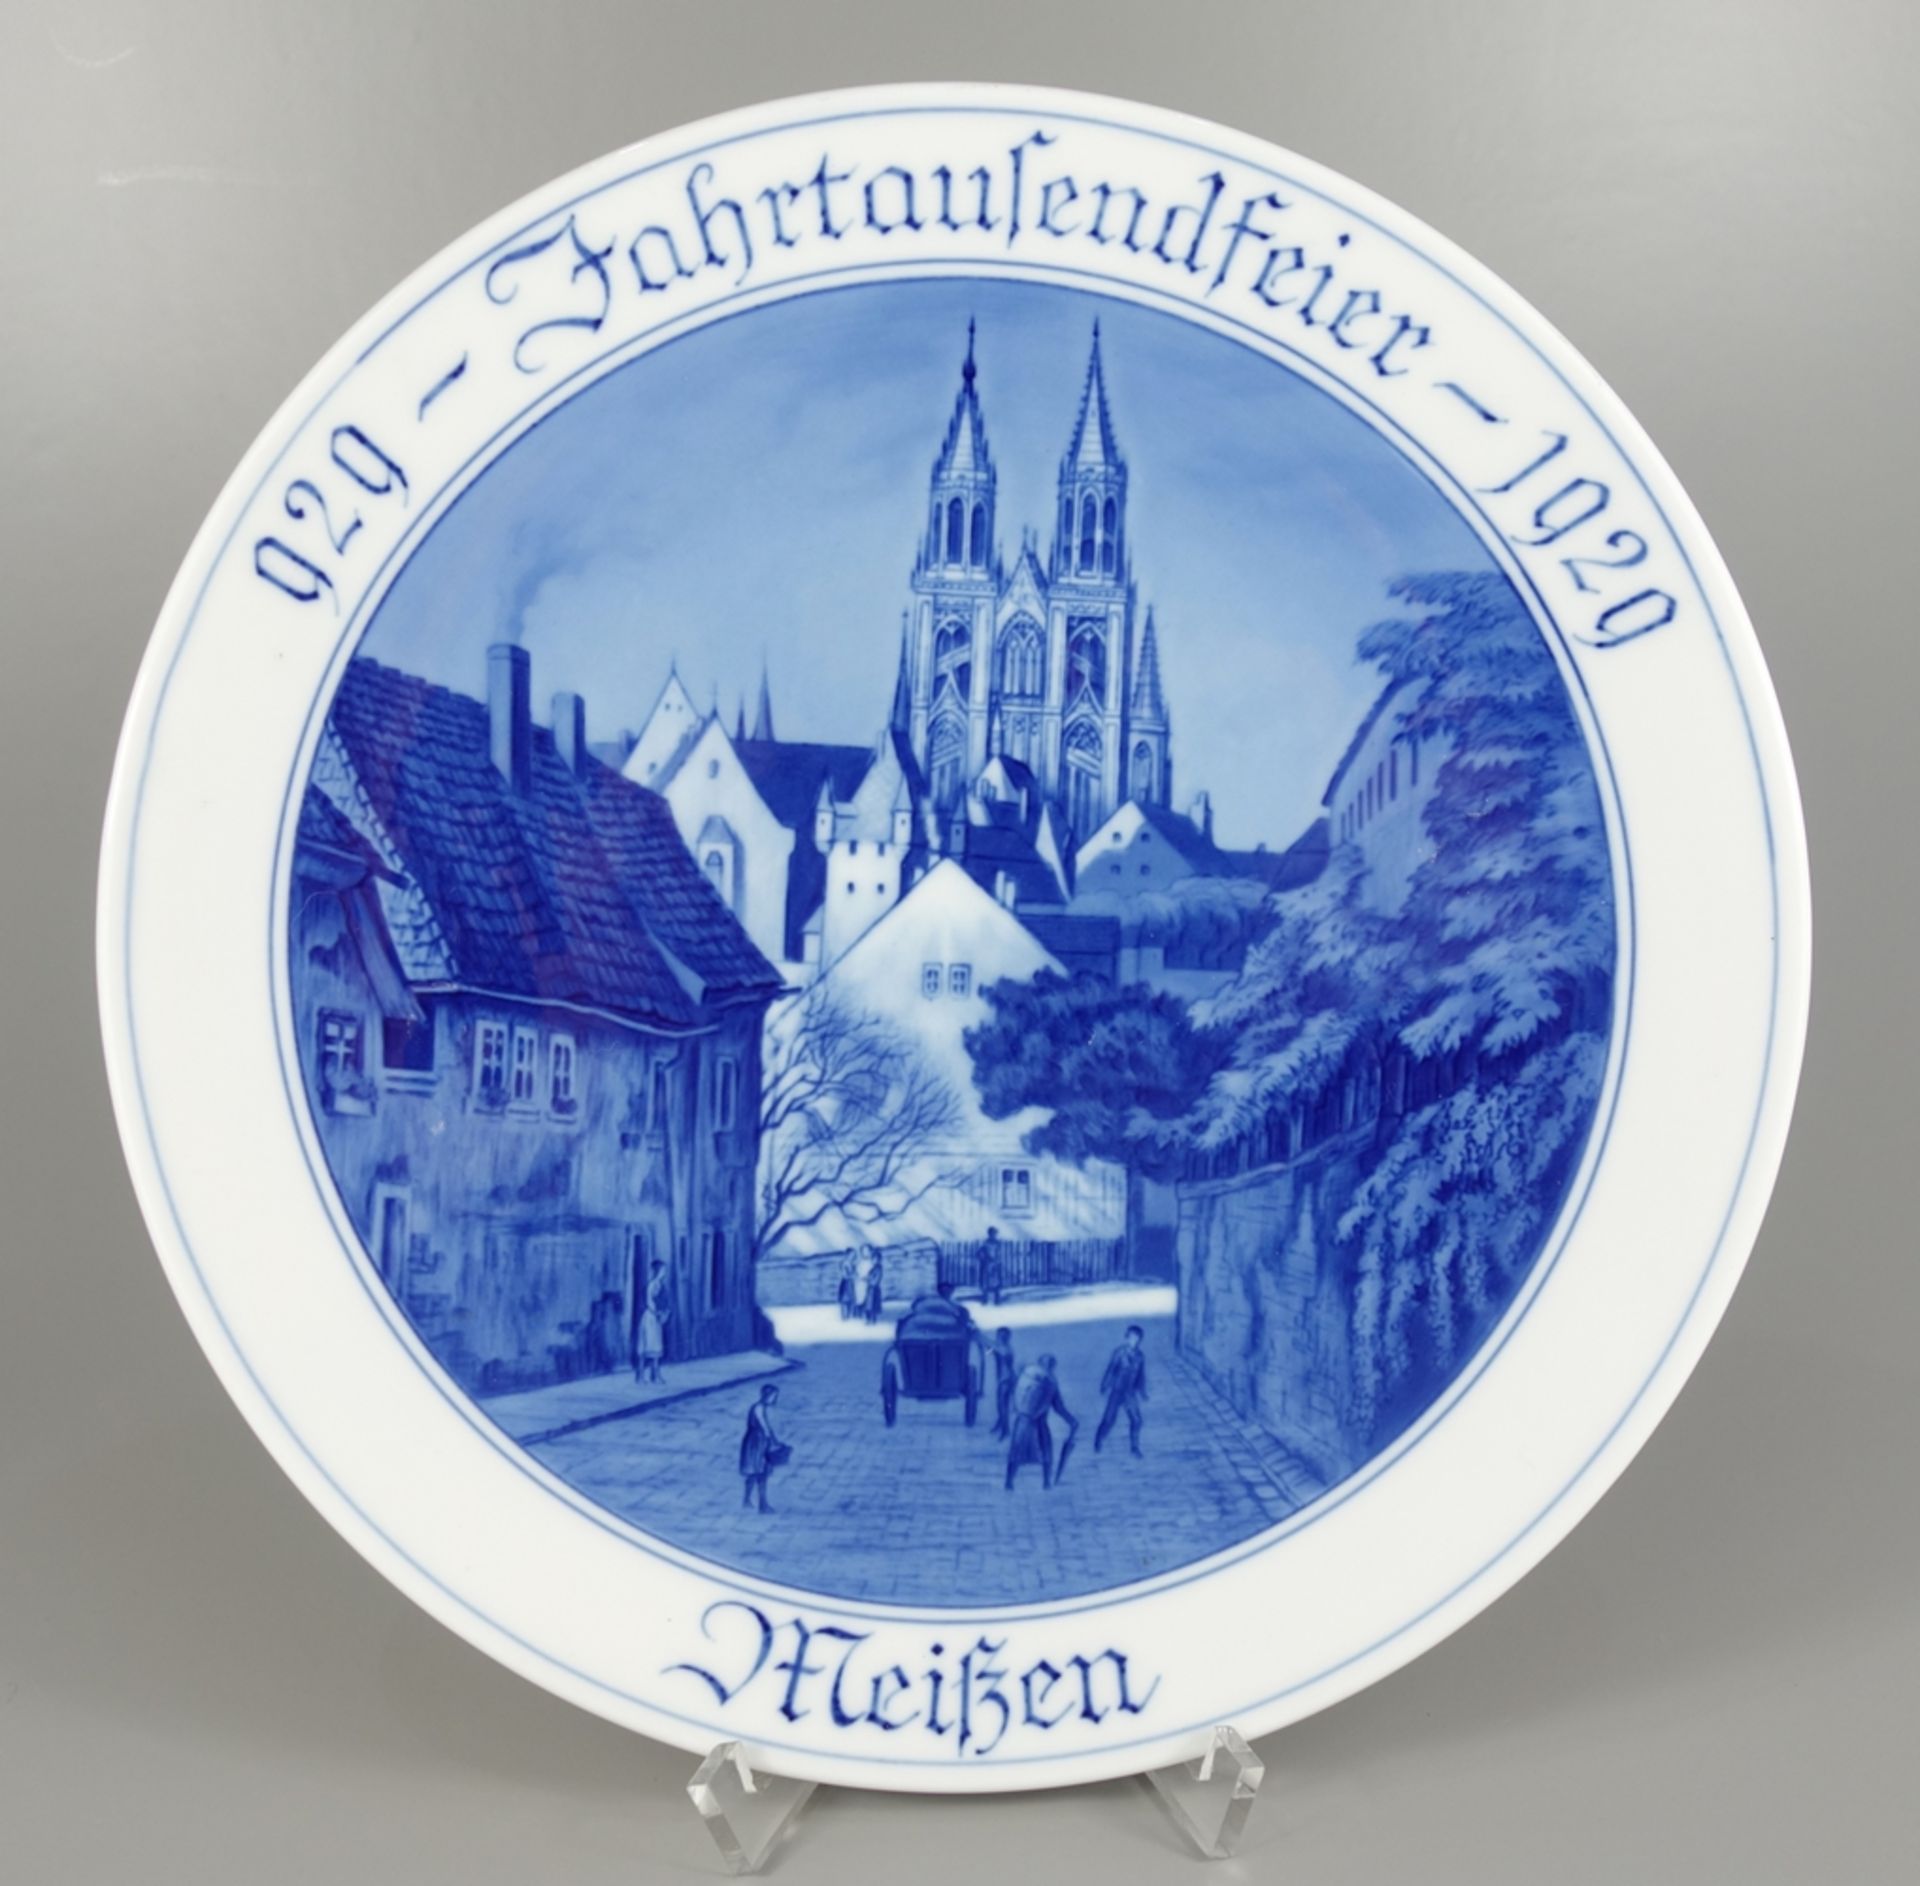 Wandteller "929 Jahrtausendfeier 1929 Meißen", Meissen, 1.Wahl, Pfeifferzeit, D.25cm, Blaumalerei,